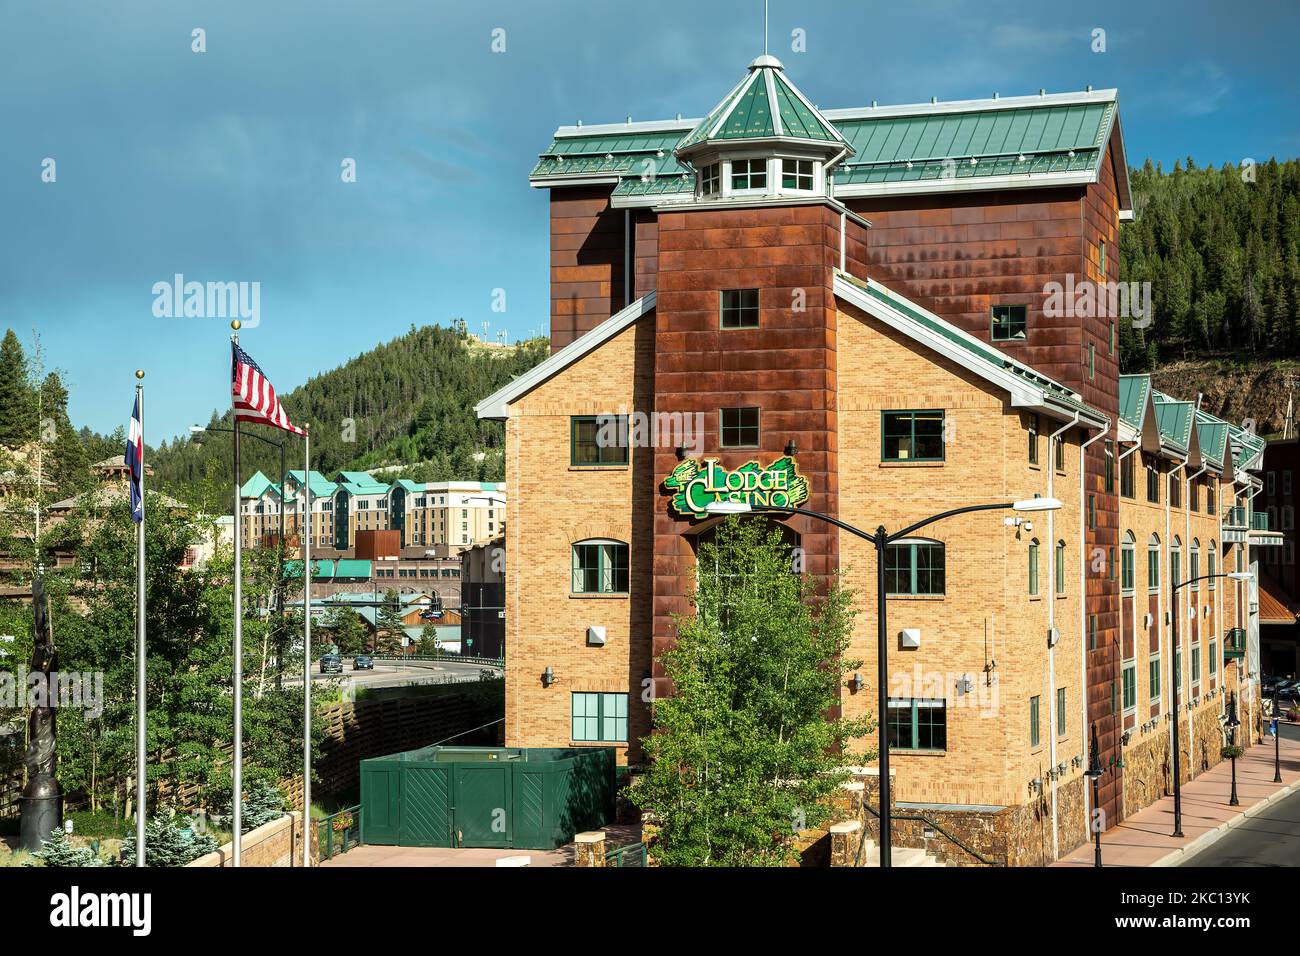 Lodge Casino, Black Hawk, Colorado USA Stock Photo